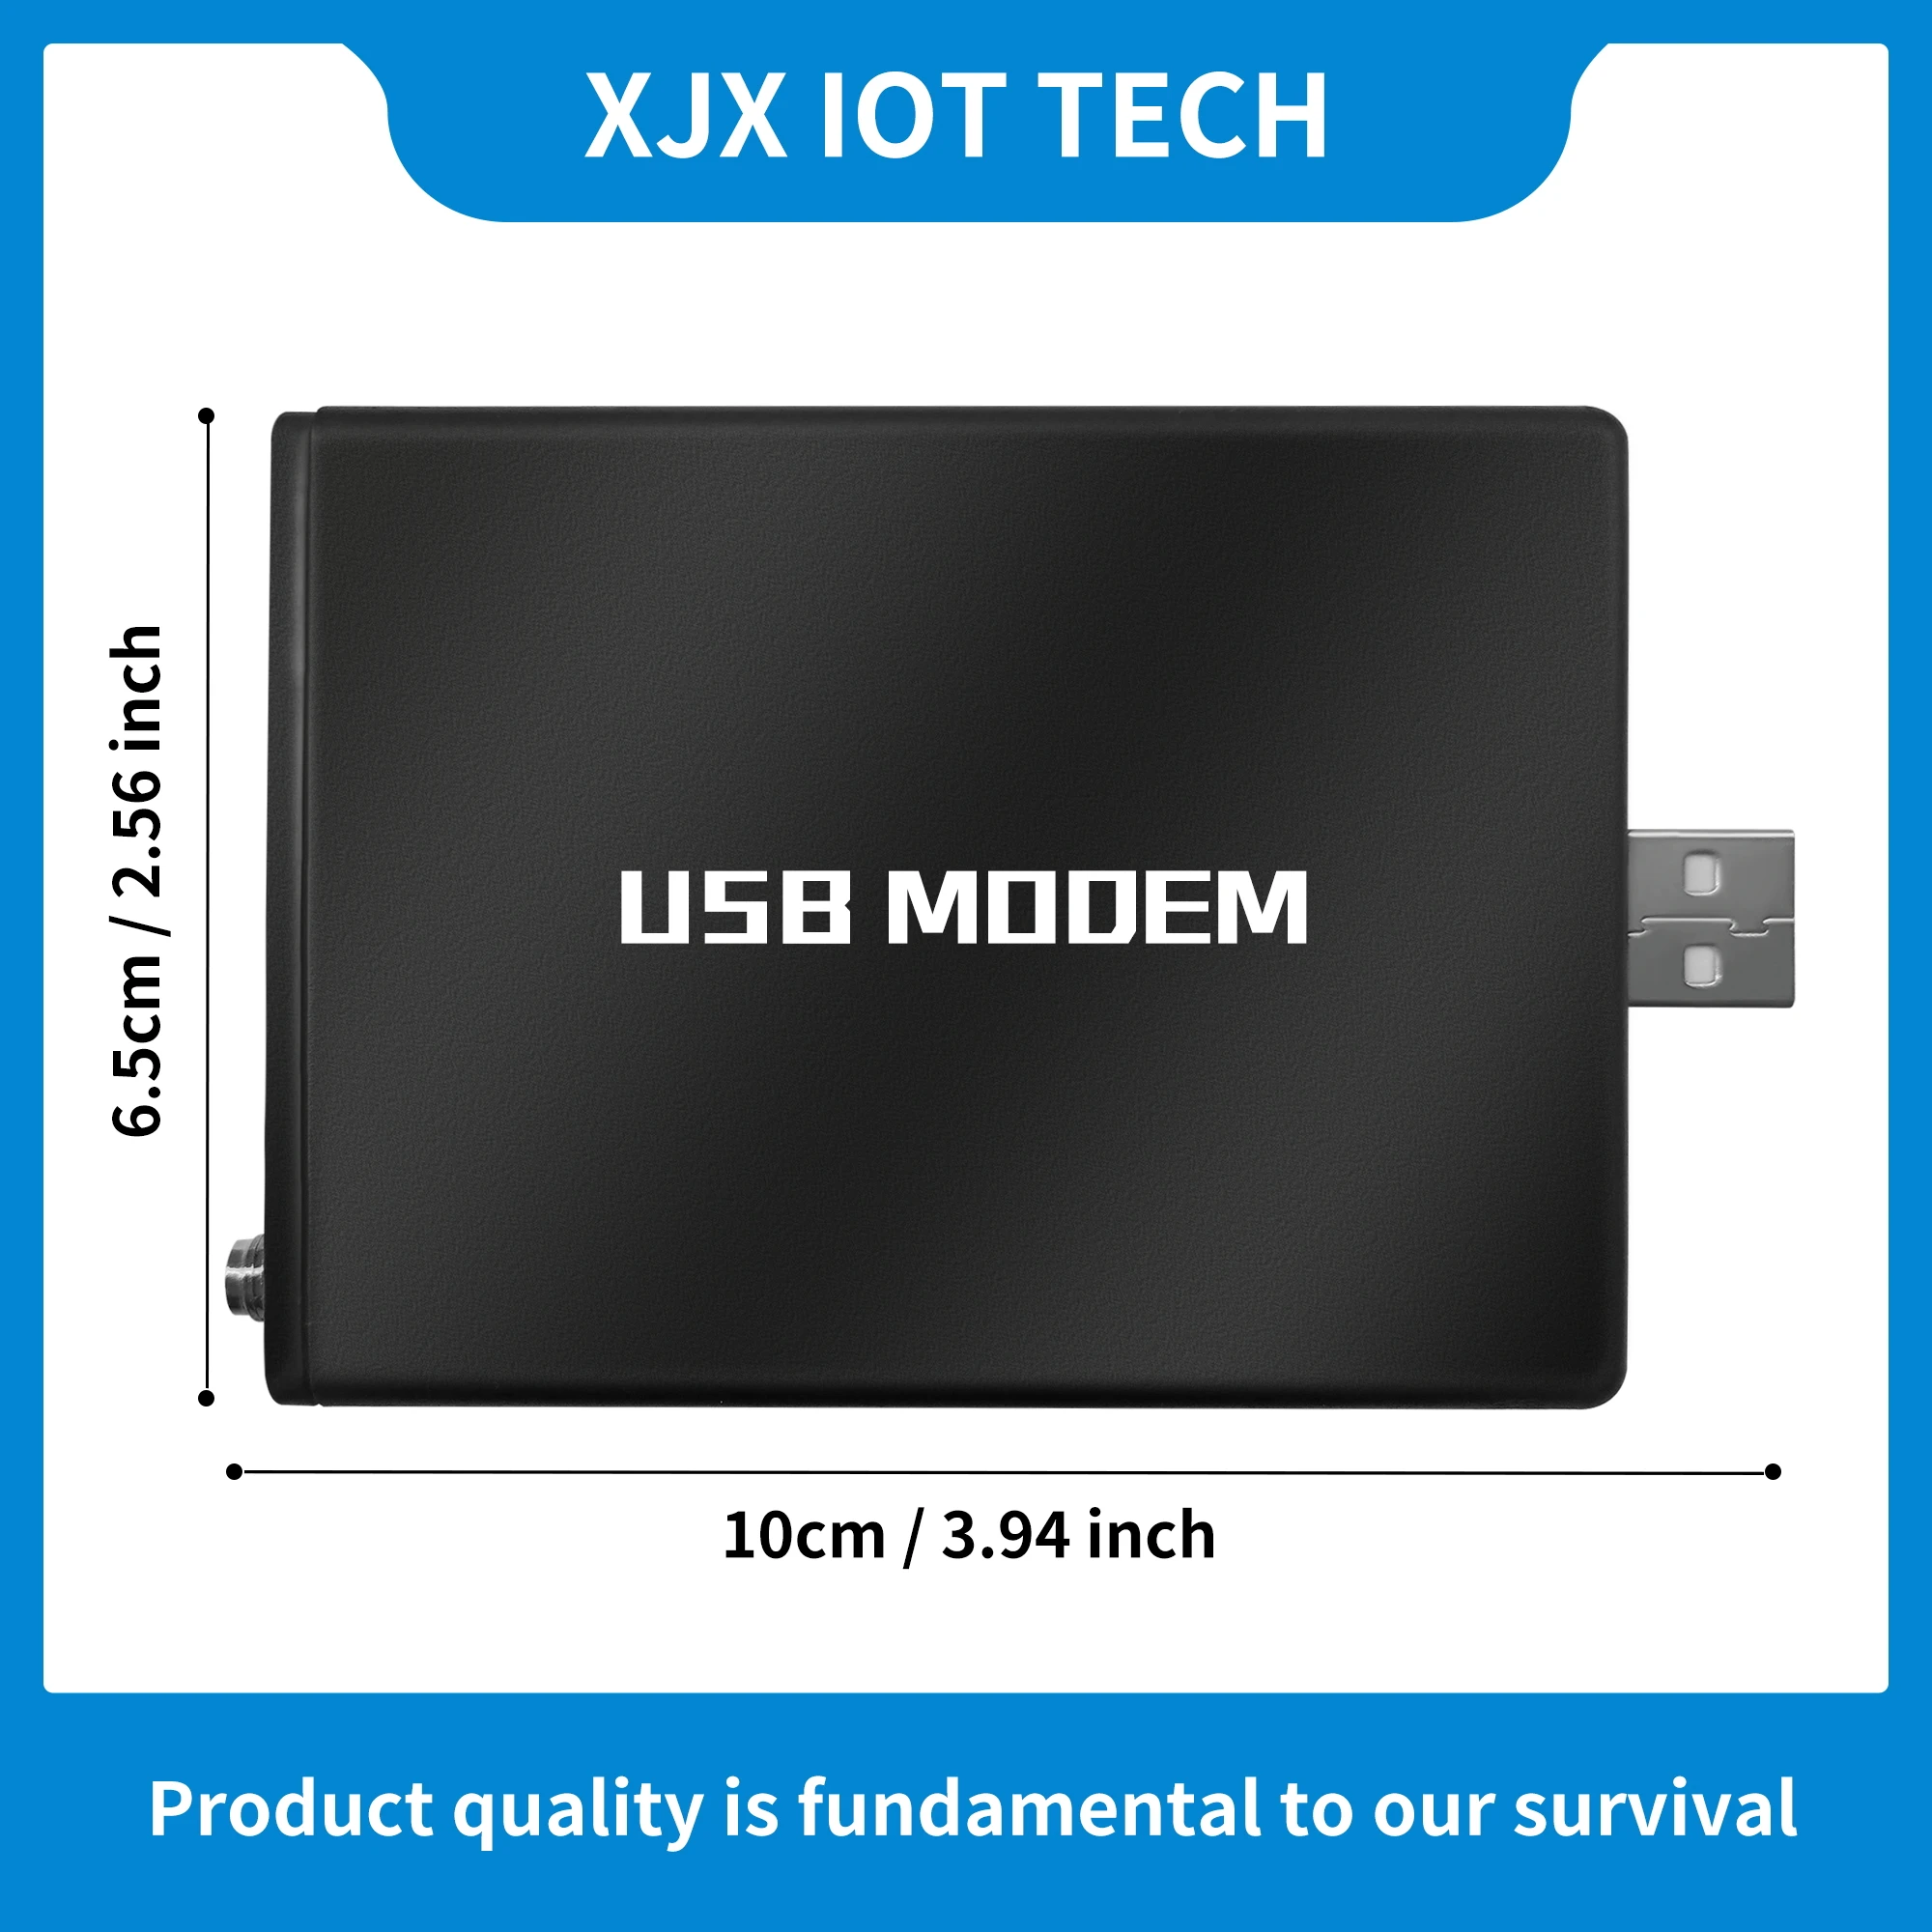 XJX нов 32-портов usb модем за масови sms-съобщения Quectel UC15-E с функция за промяна на 3G Imei